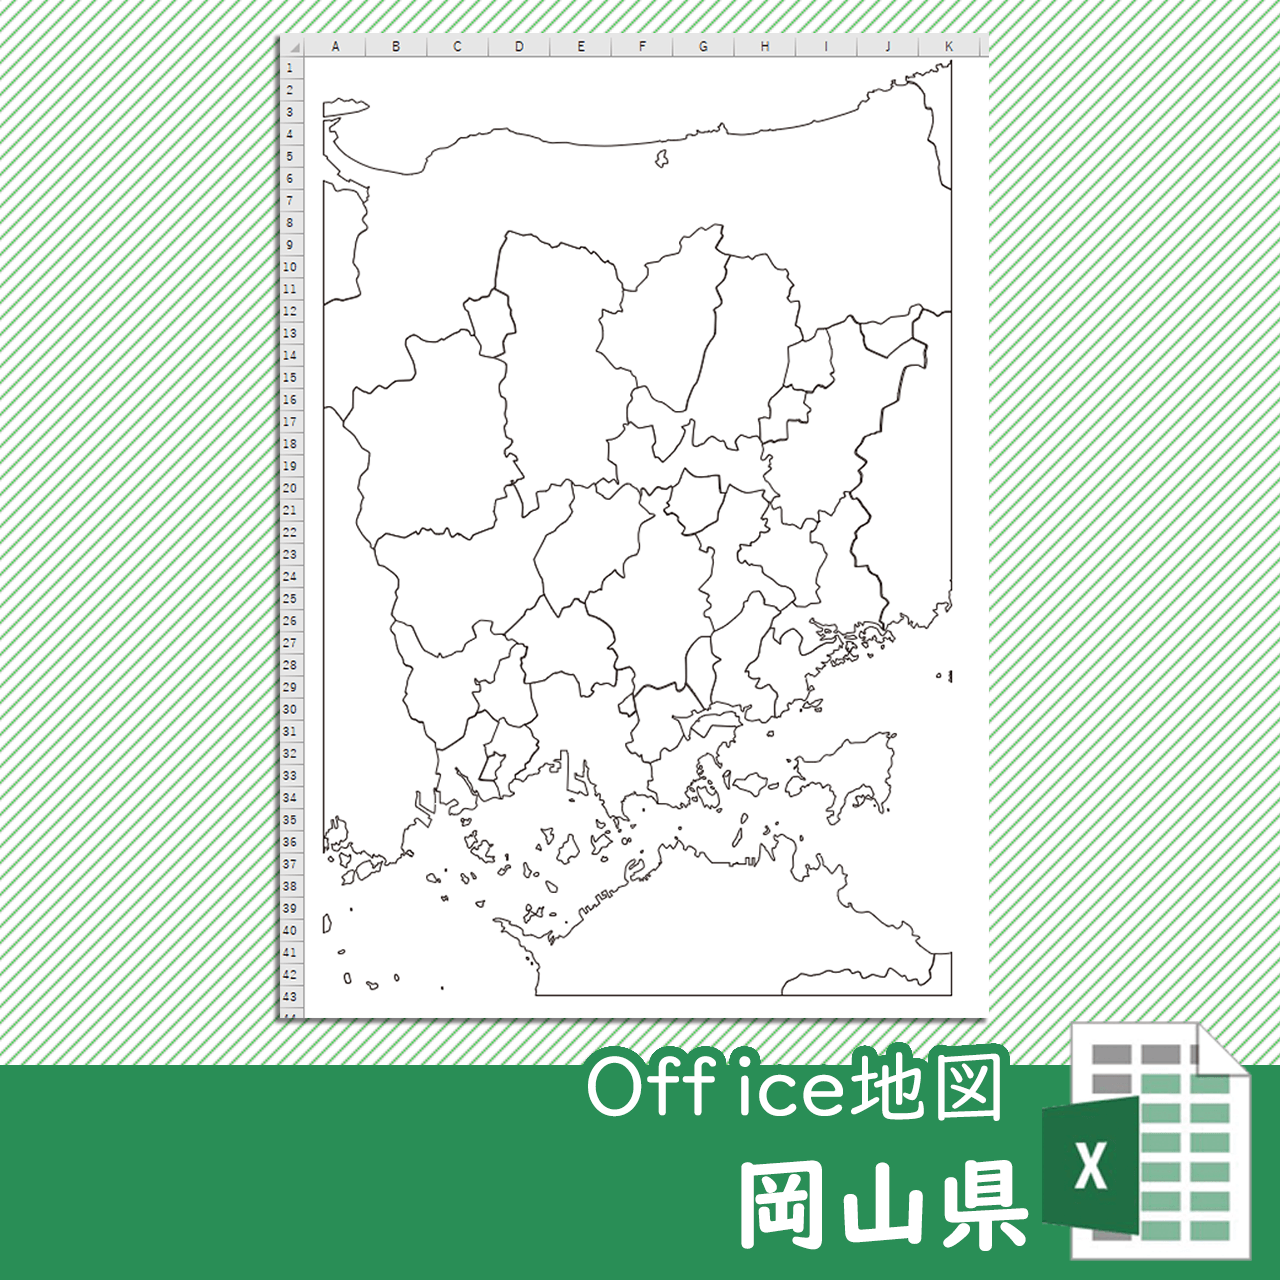 岡山県のOffice地図のサムネイル